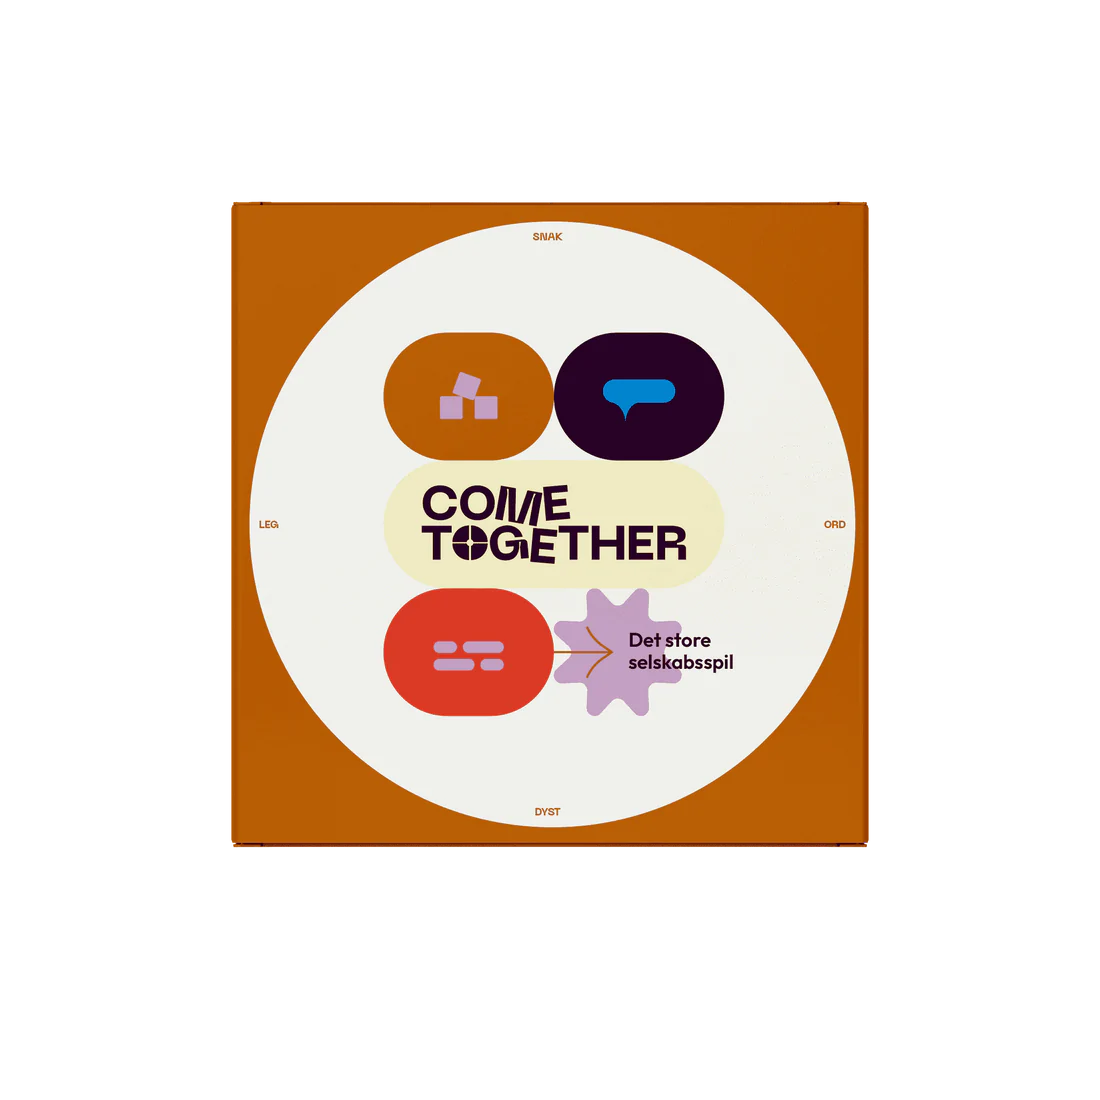 Come Together - det store selskabsspil